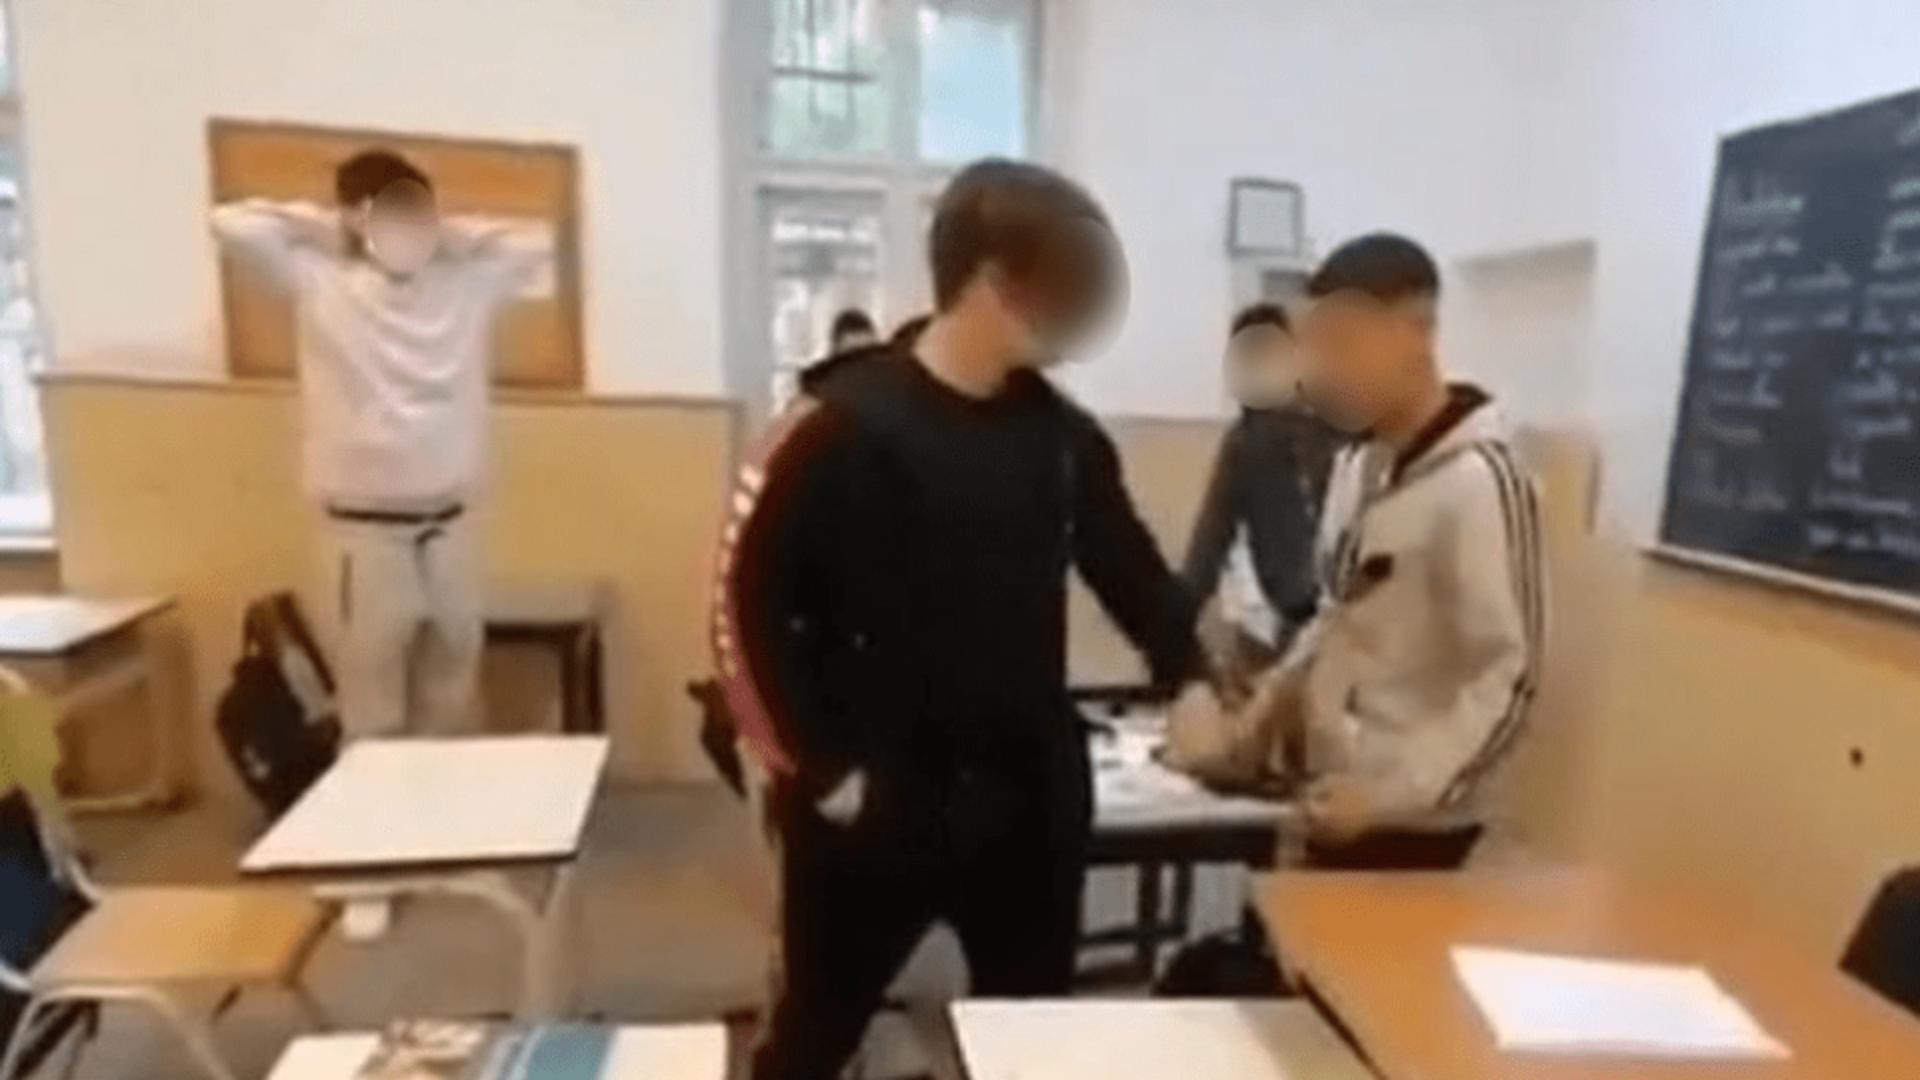 Momentul in care elevul a fost atacat de colegi (captură video)